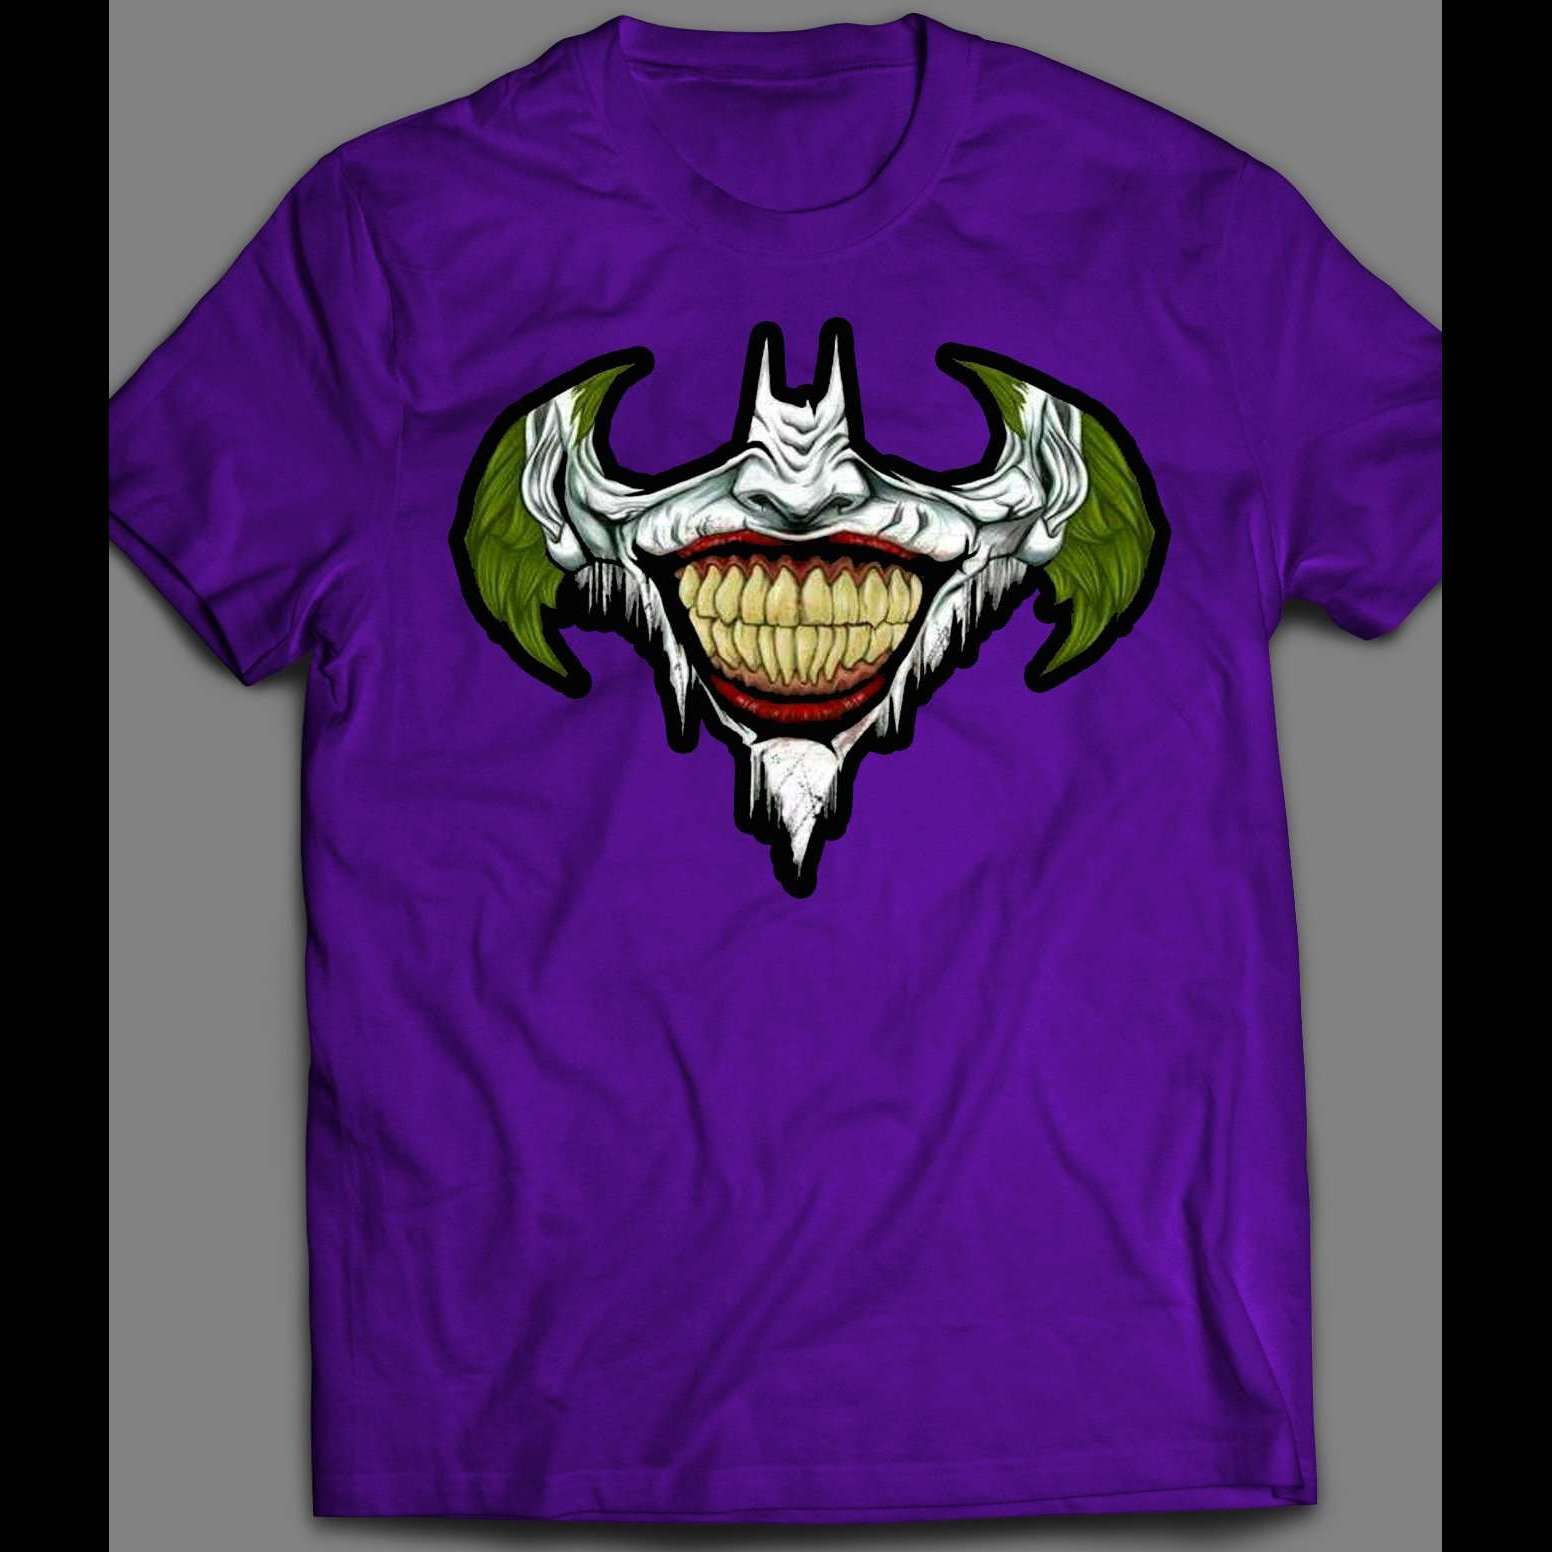 CUSTOM THE UP ART SHIRT – X Shirts LOGO BATMAN JOKER OldSkool MASH